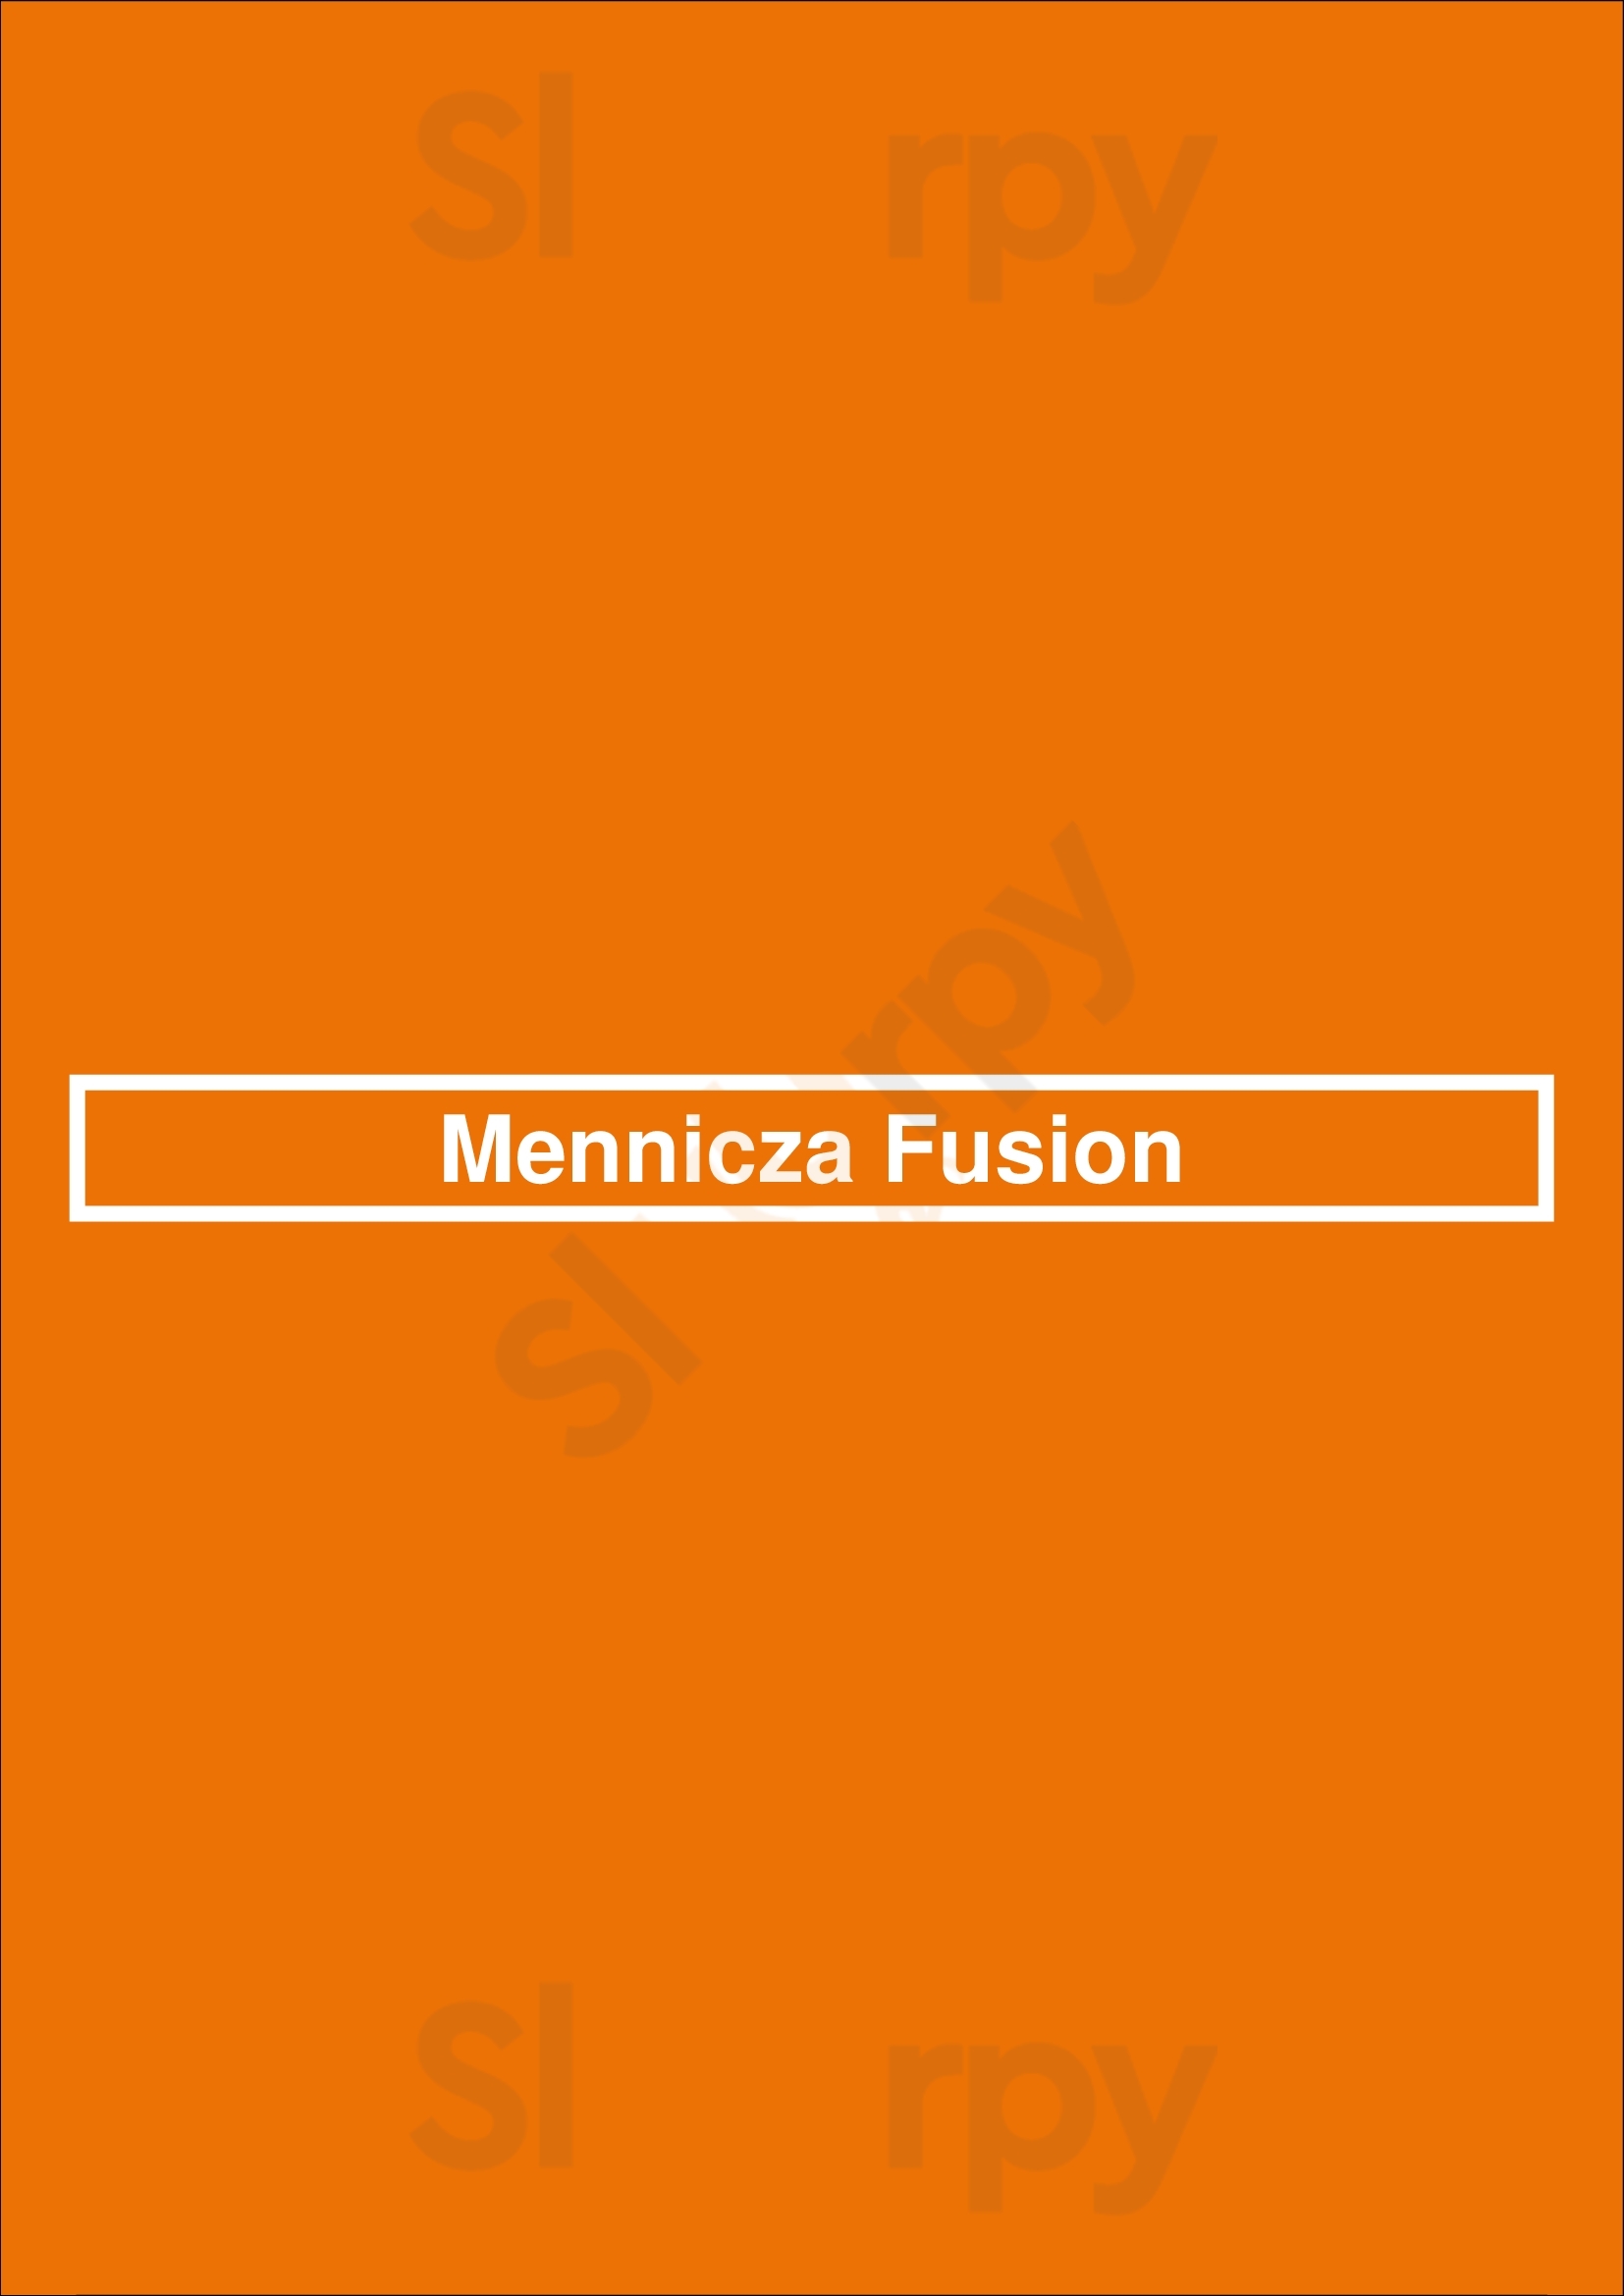 Mennicza Fusion Wrocław Menu - 1